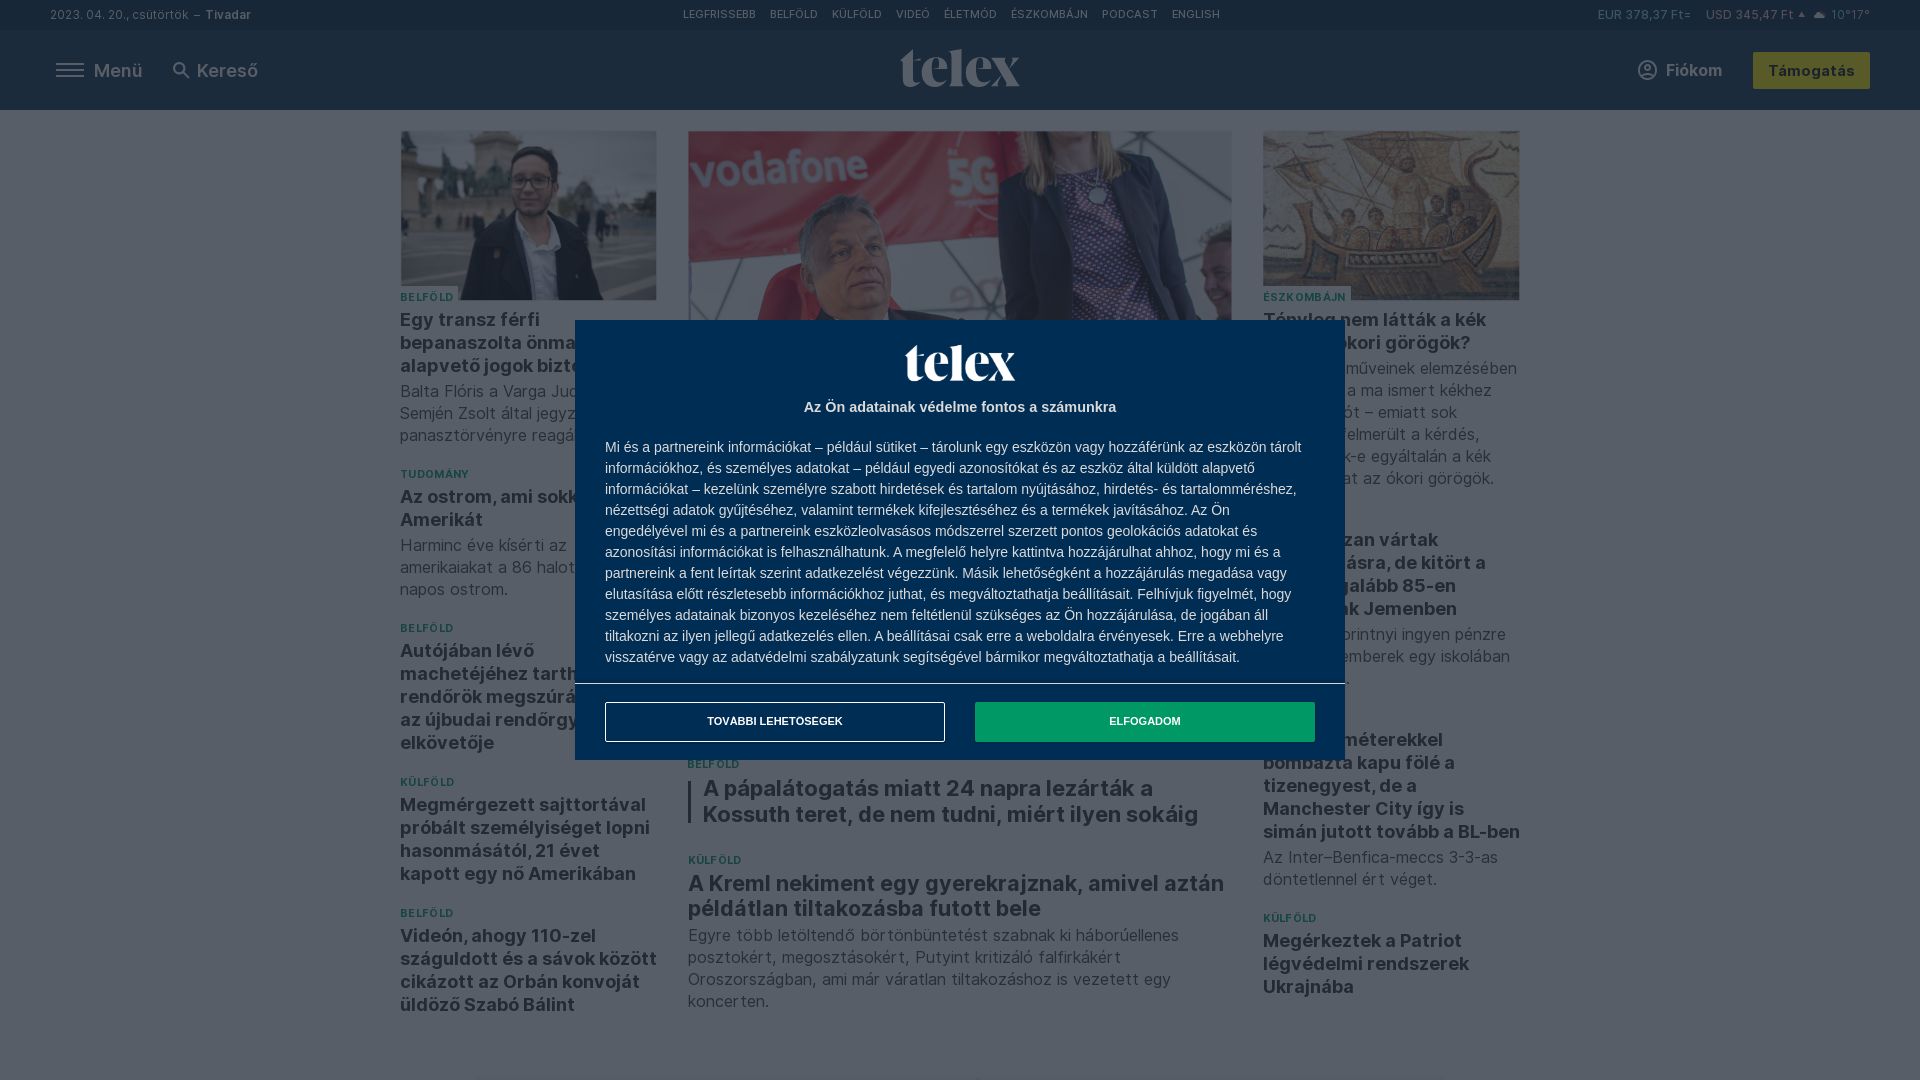 网站状态 telex.hu 是  在线的